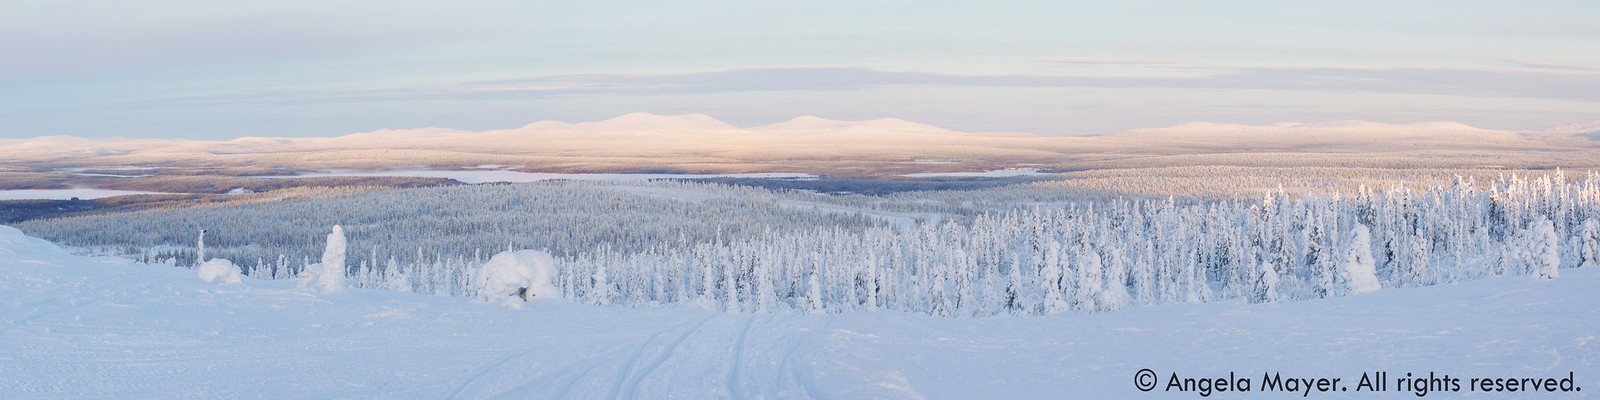 Lapland Panorama